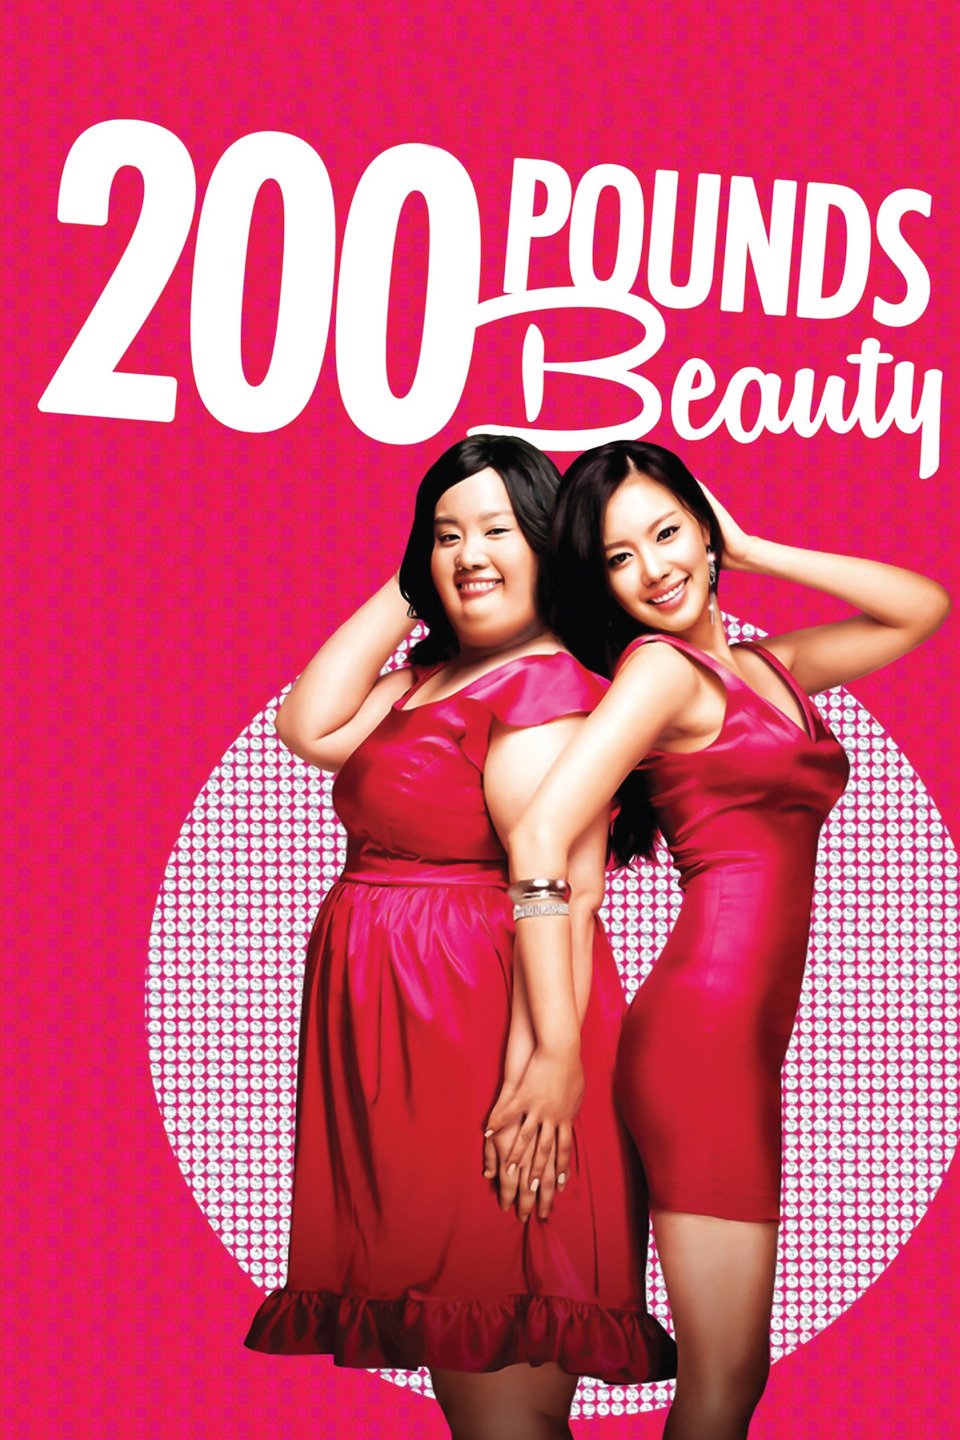 200 Pounds Beauty (2006) - Rotten Tomatoes